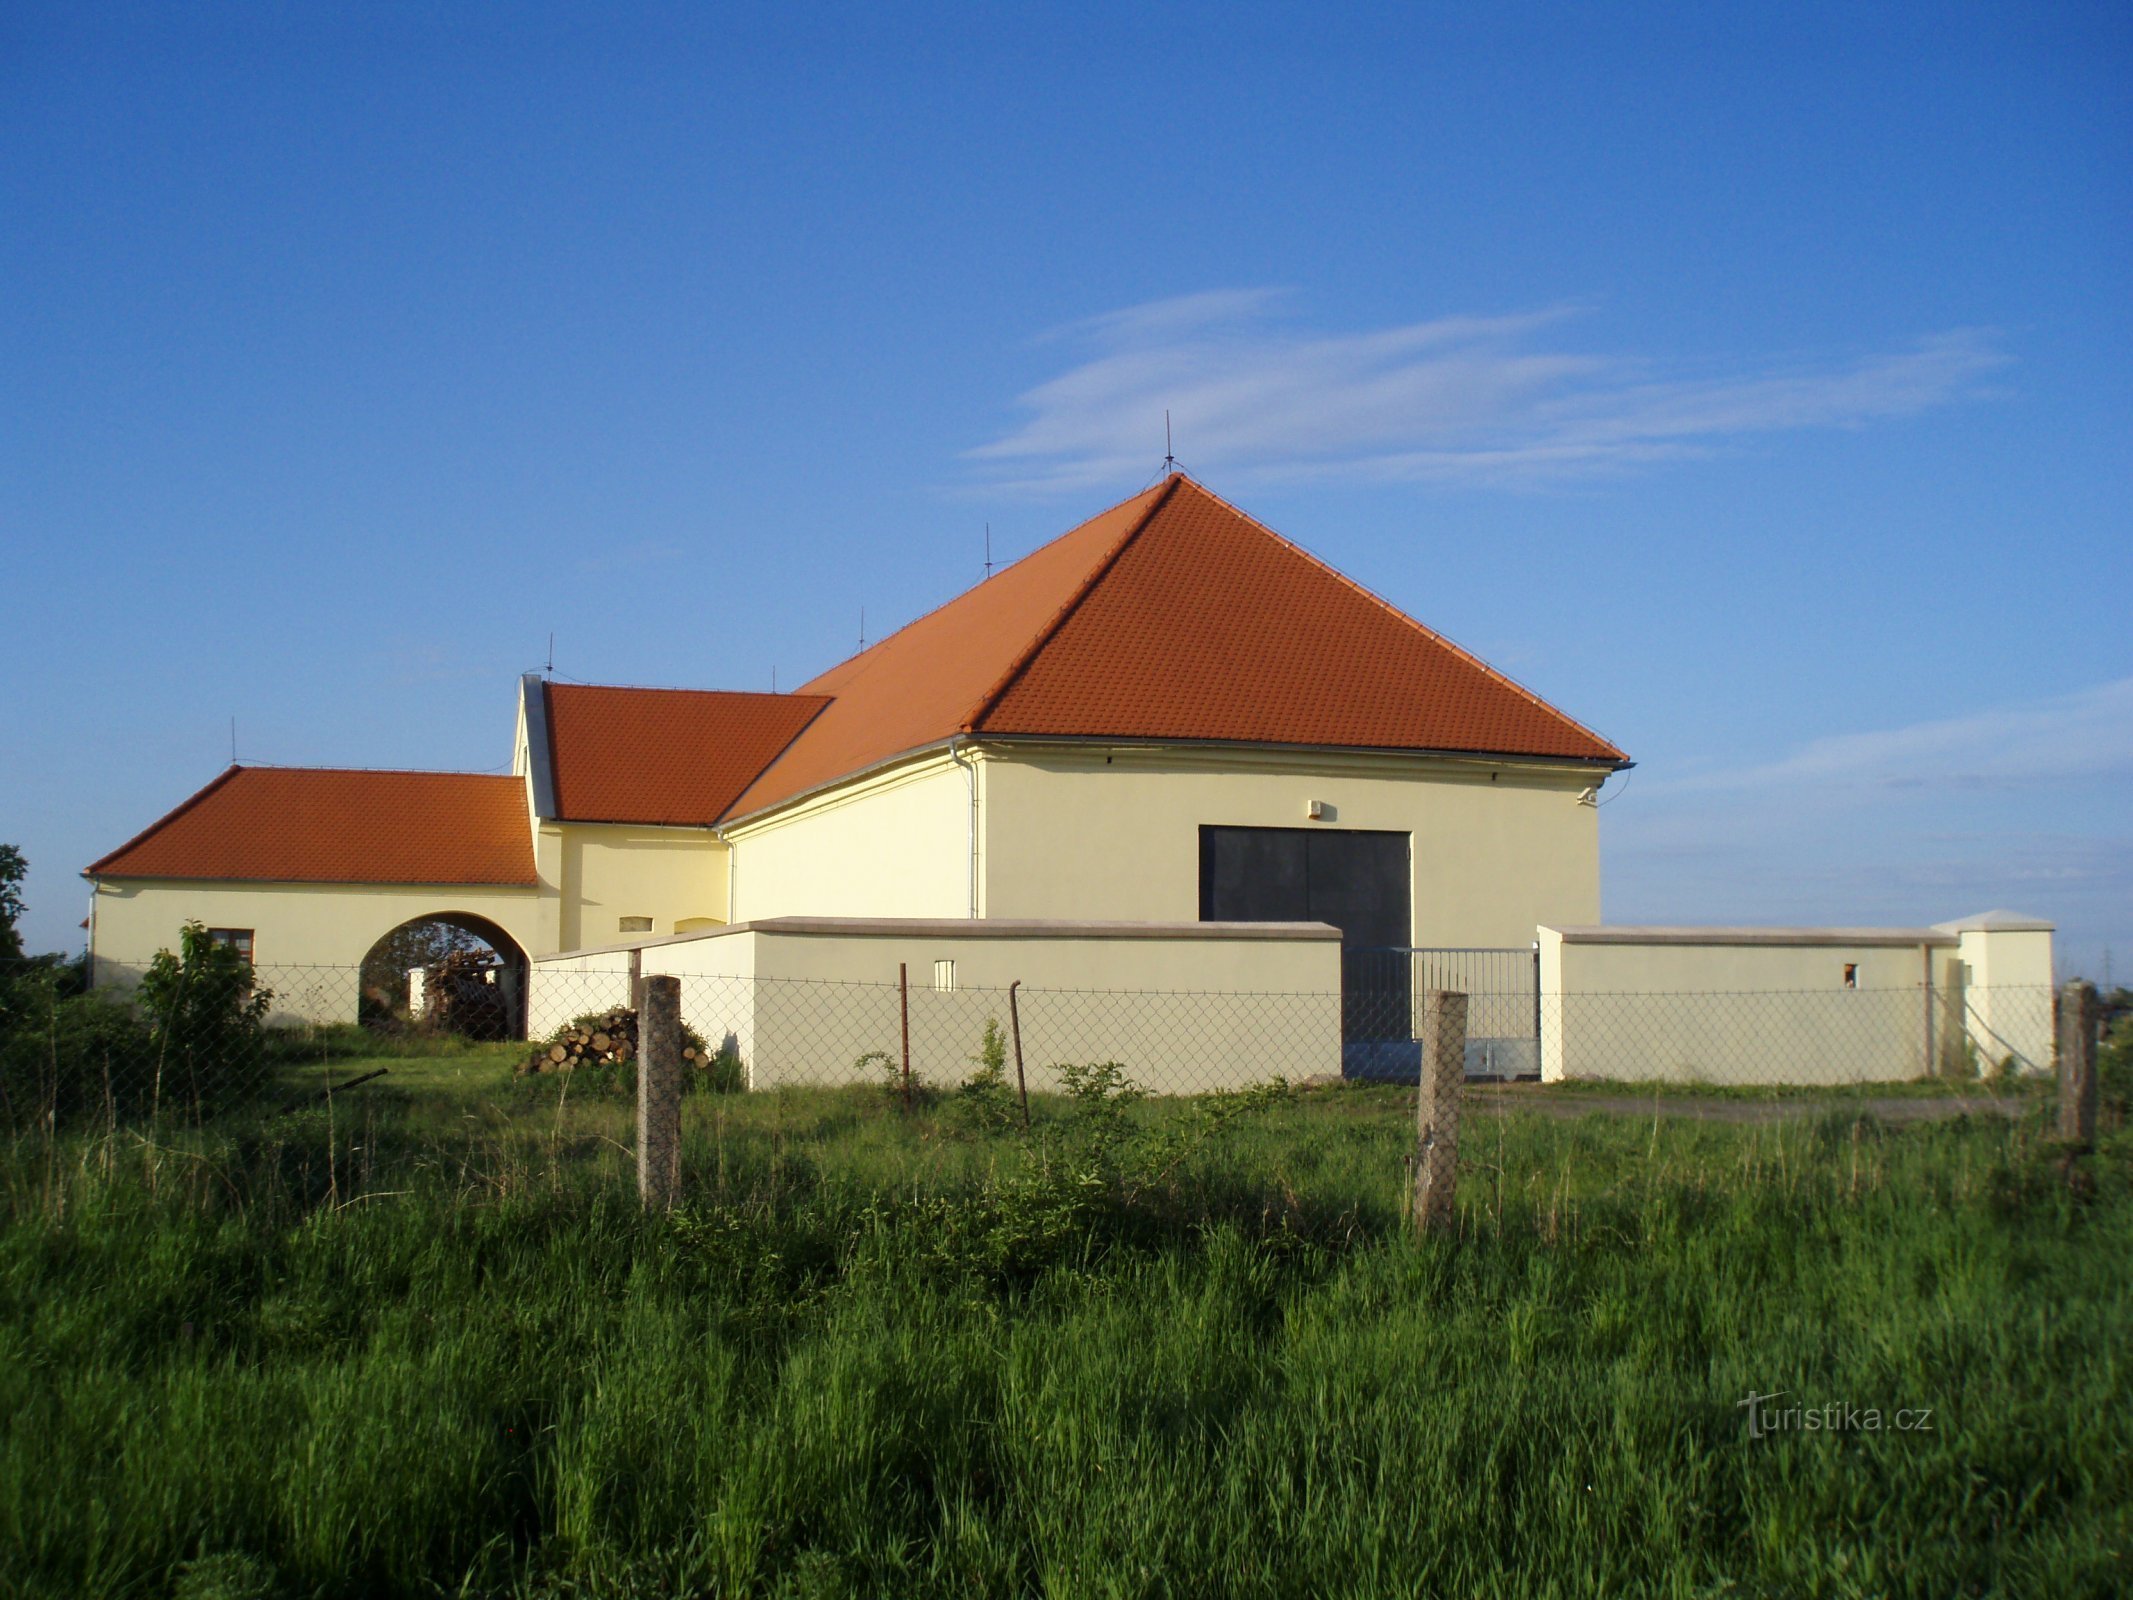 Poederfabriek bij Kuklen (Hradec Králové, 8.5.2011 mei XNUMX)